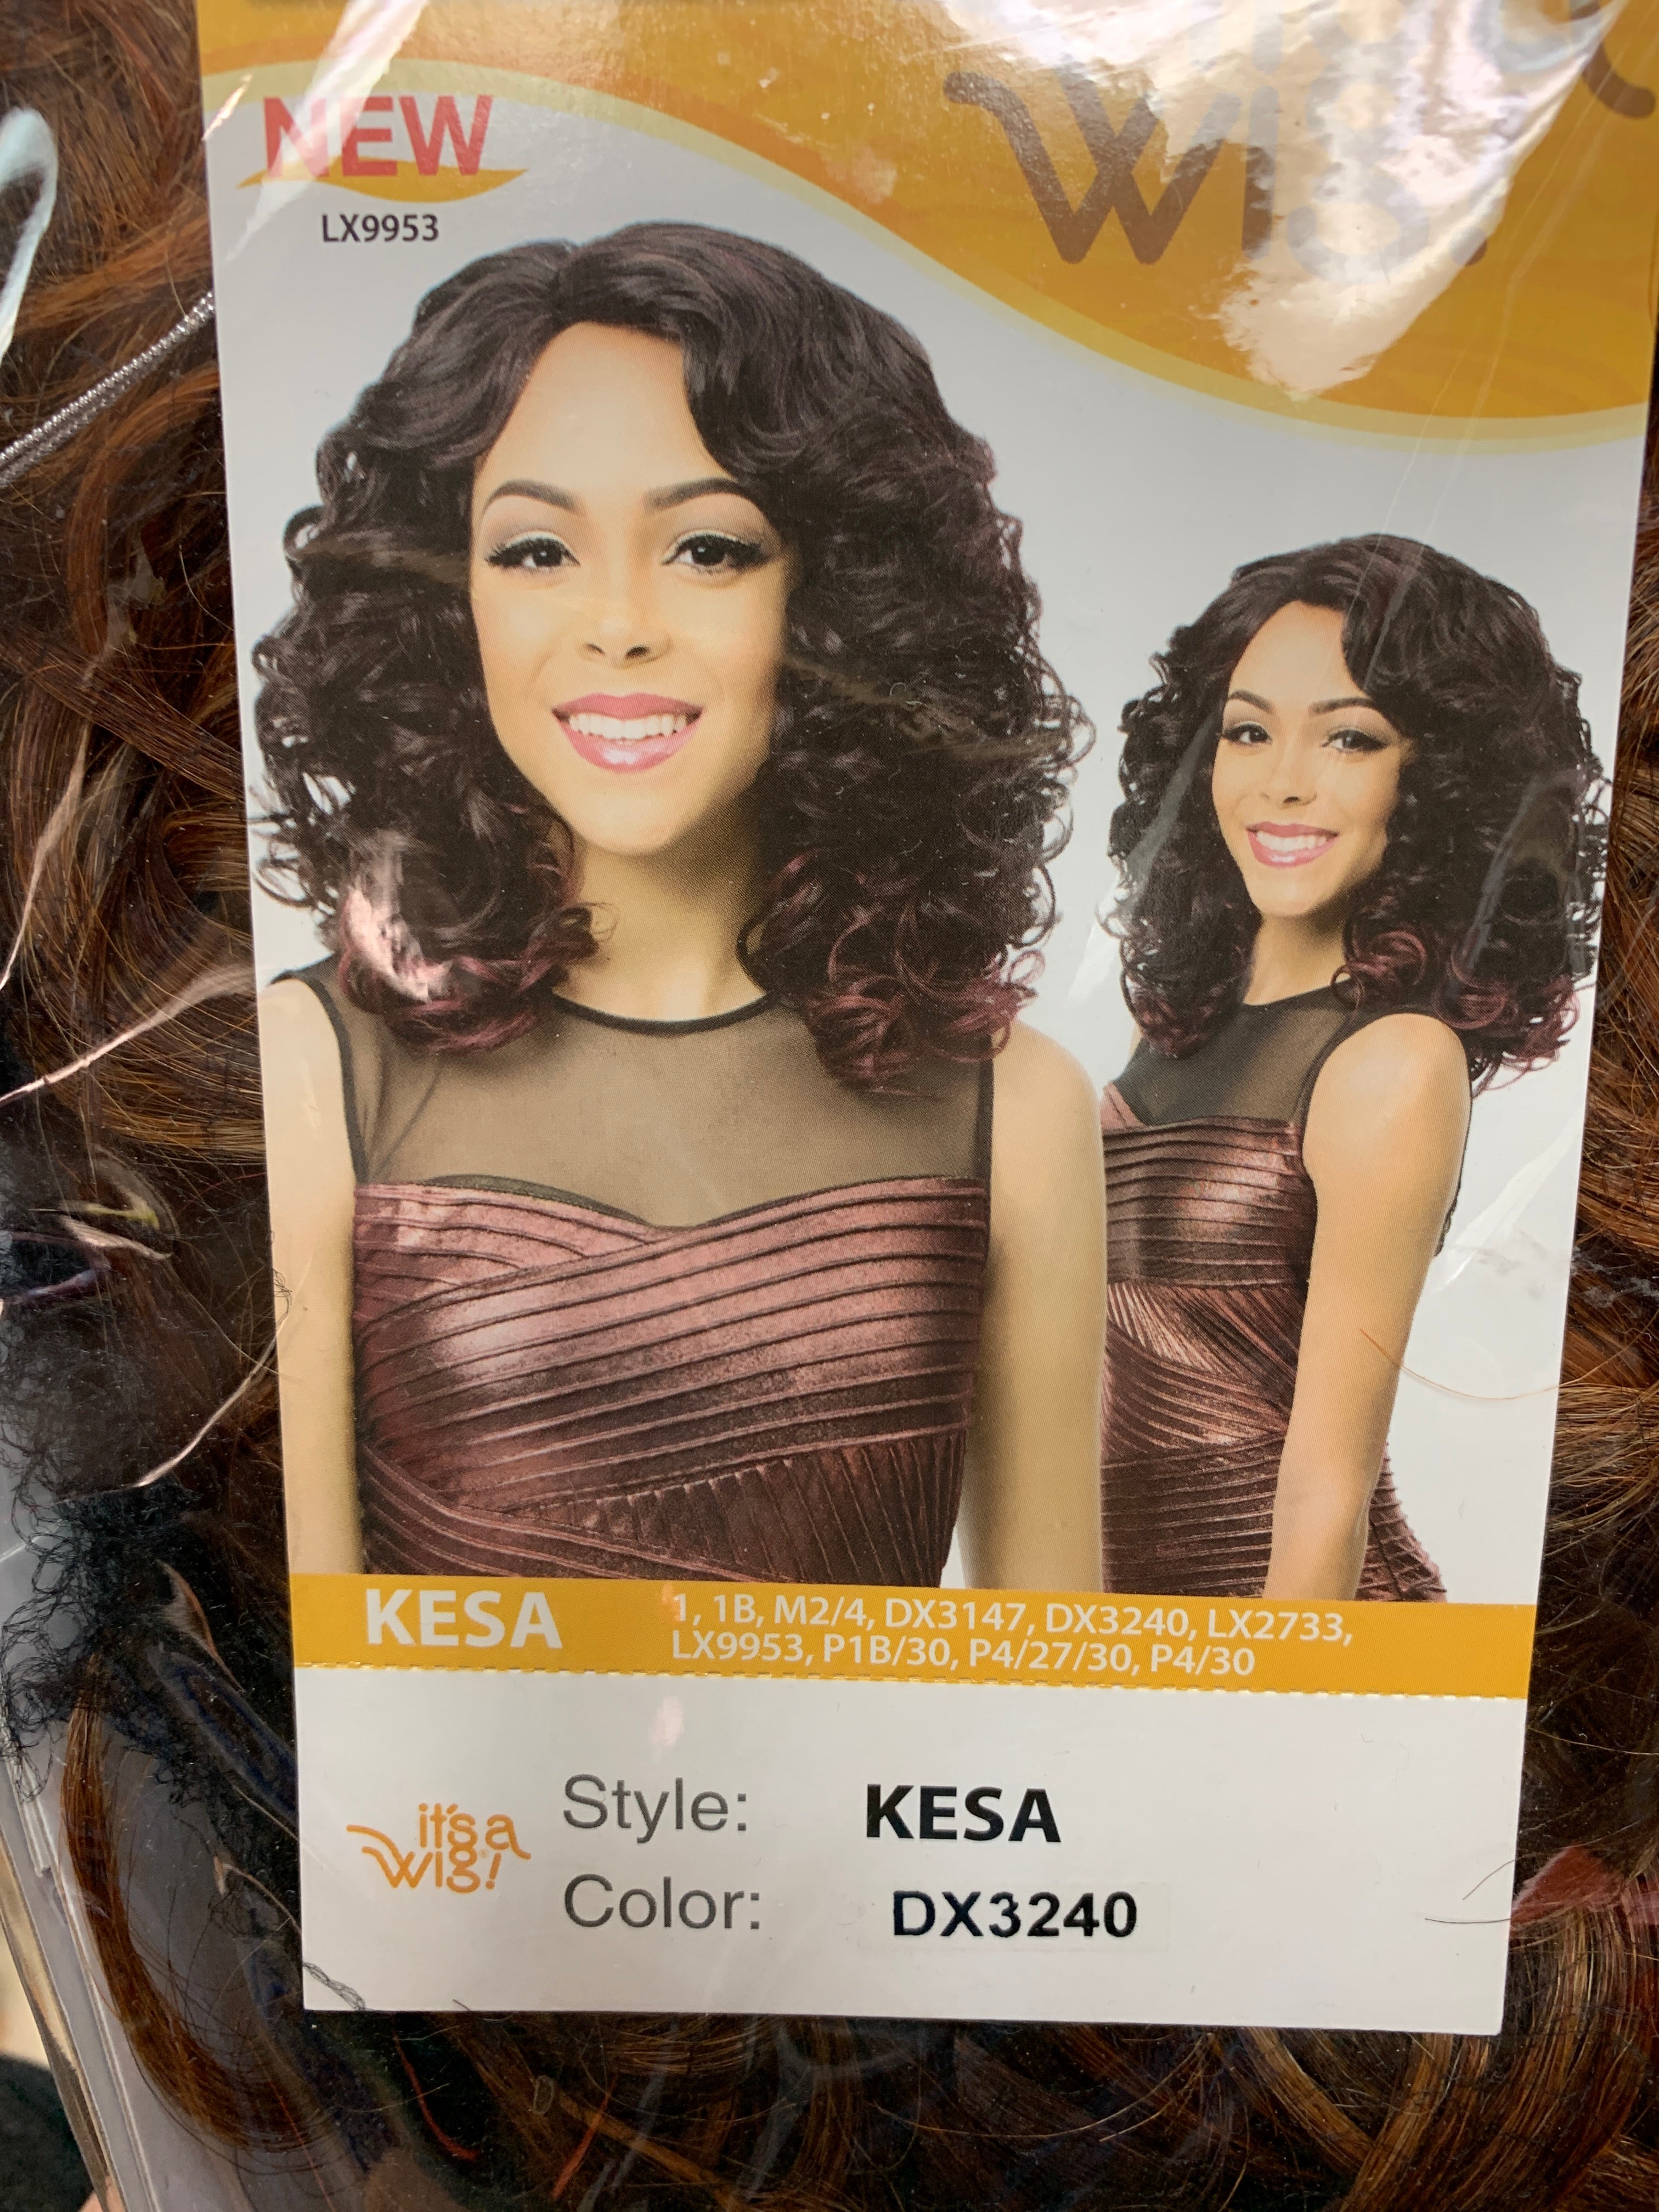 It’s a wig Kesa